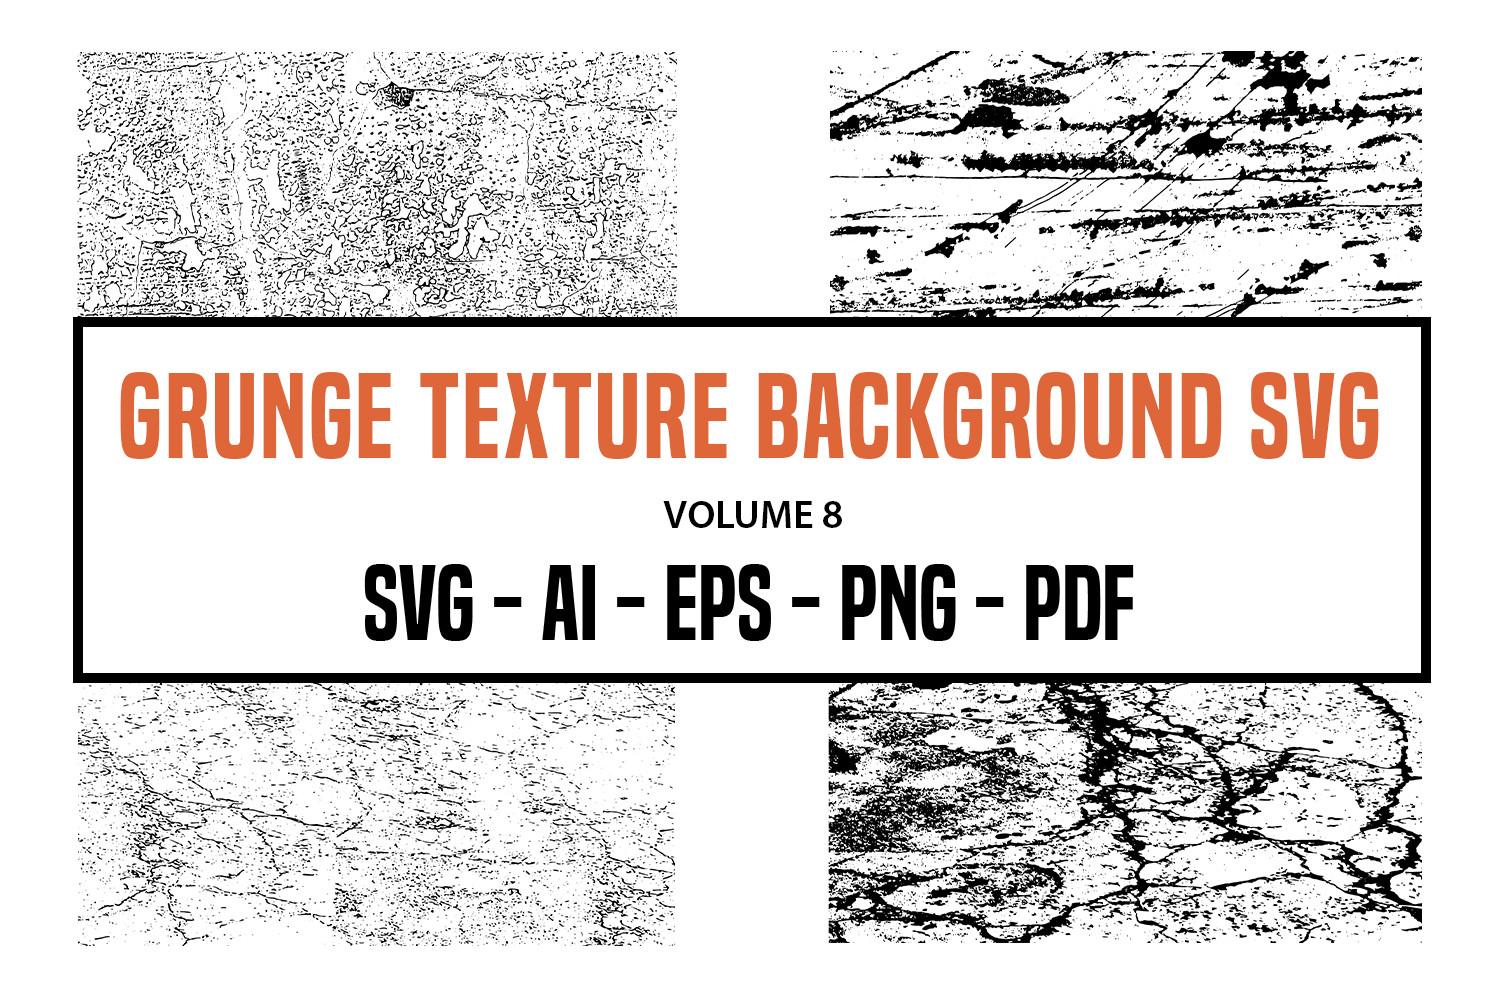 Grunge Texture Background SVG - Volume 8